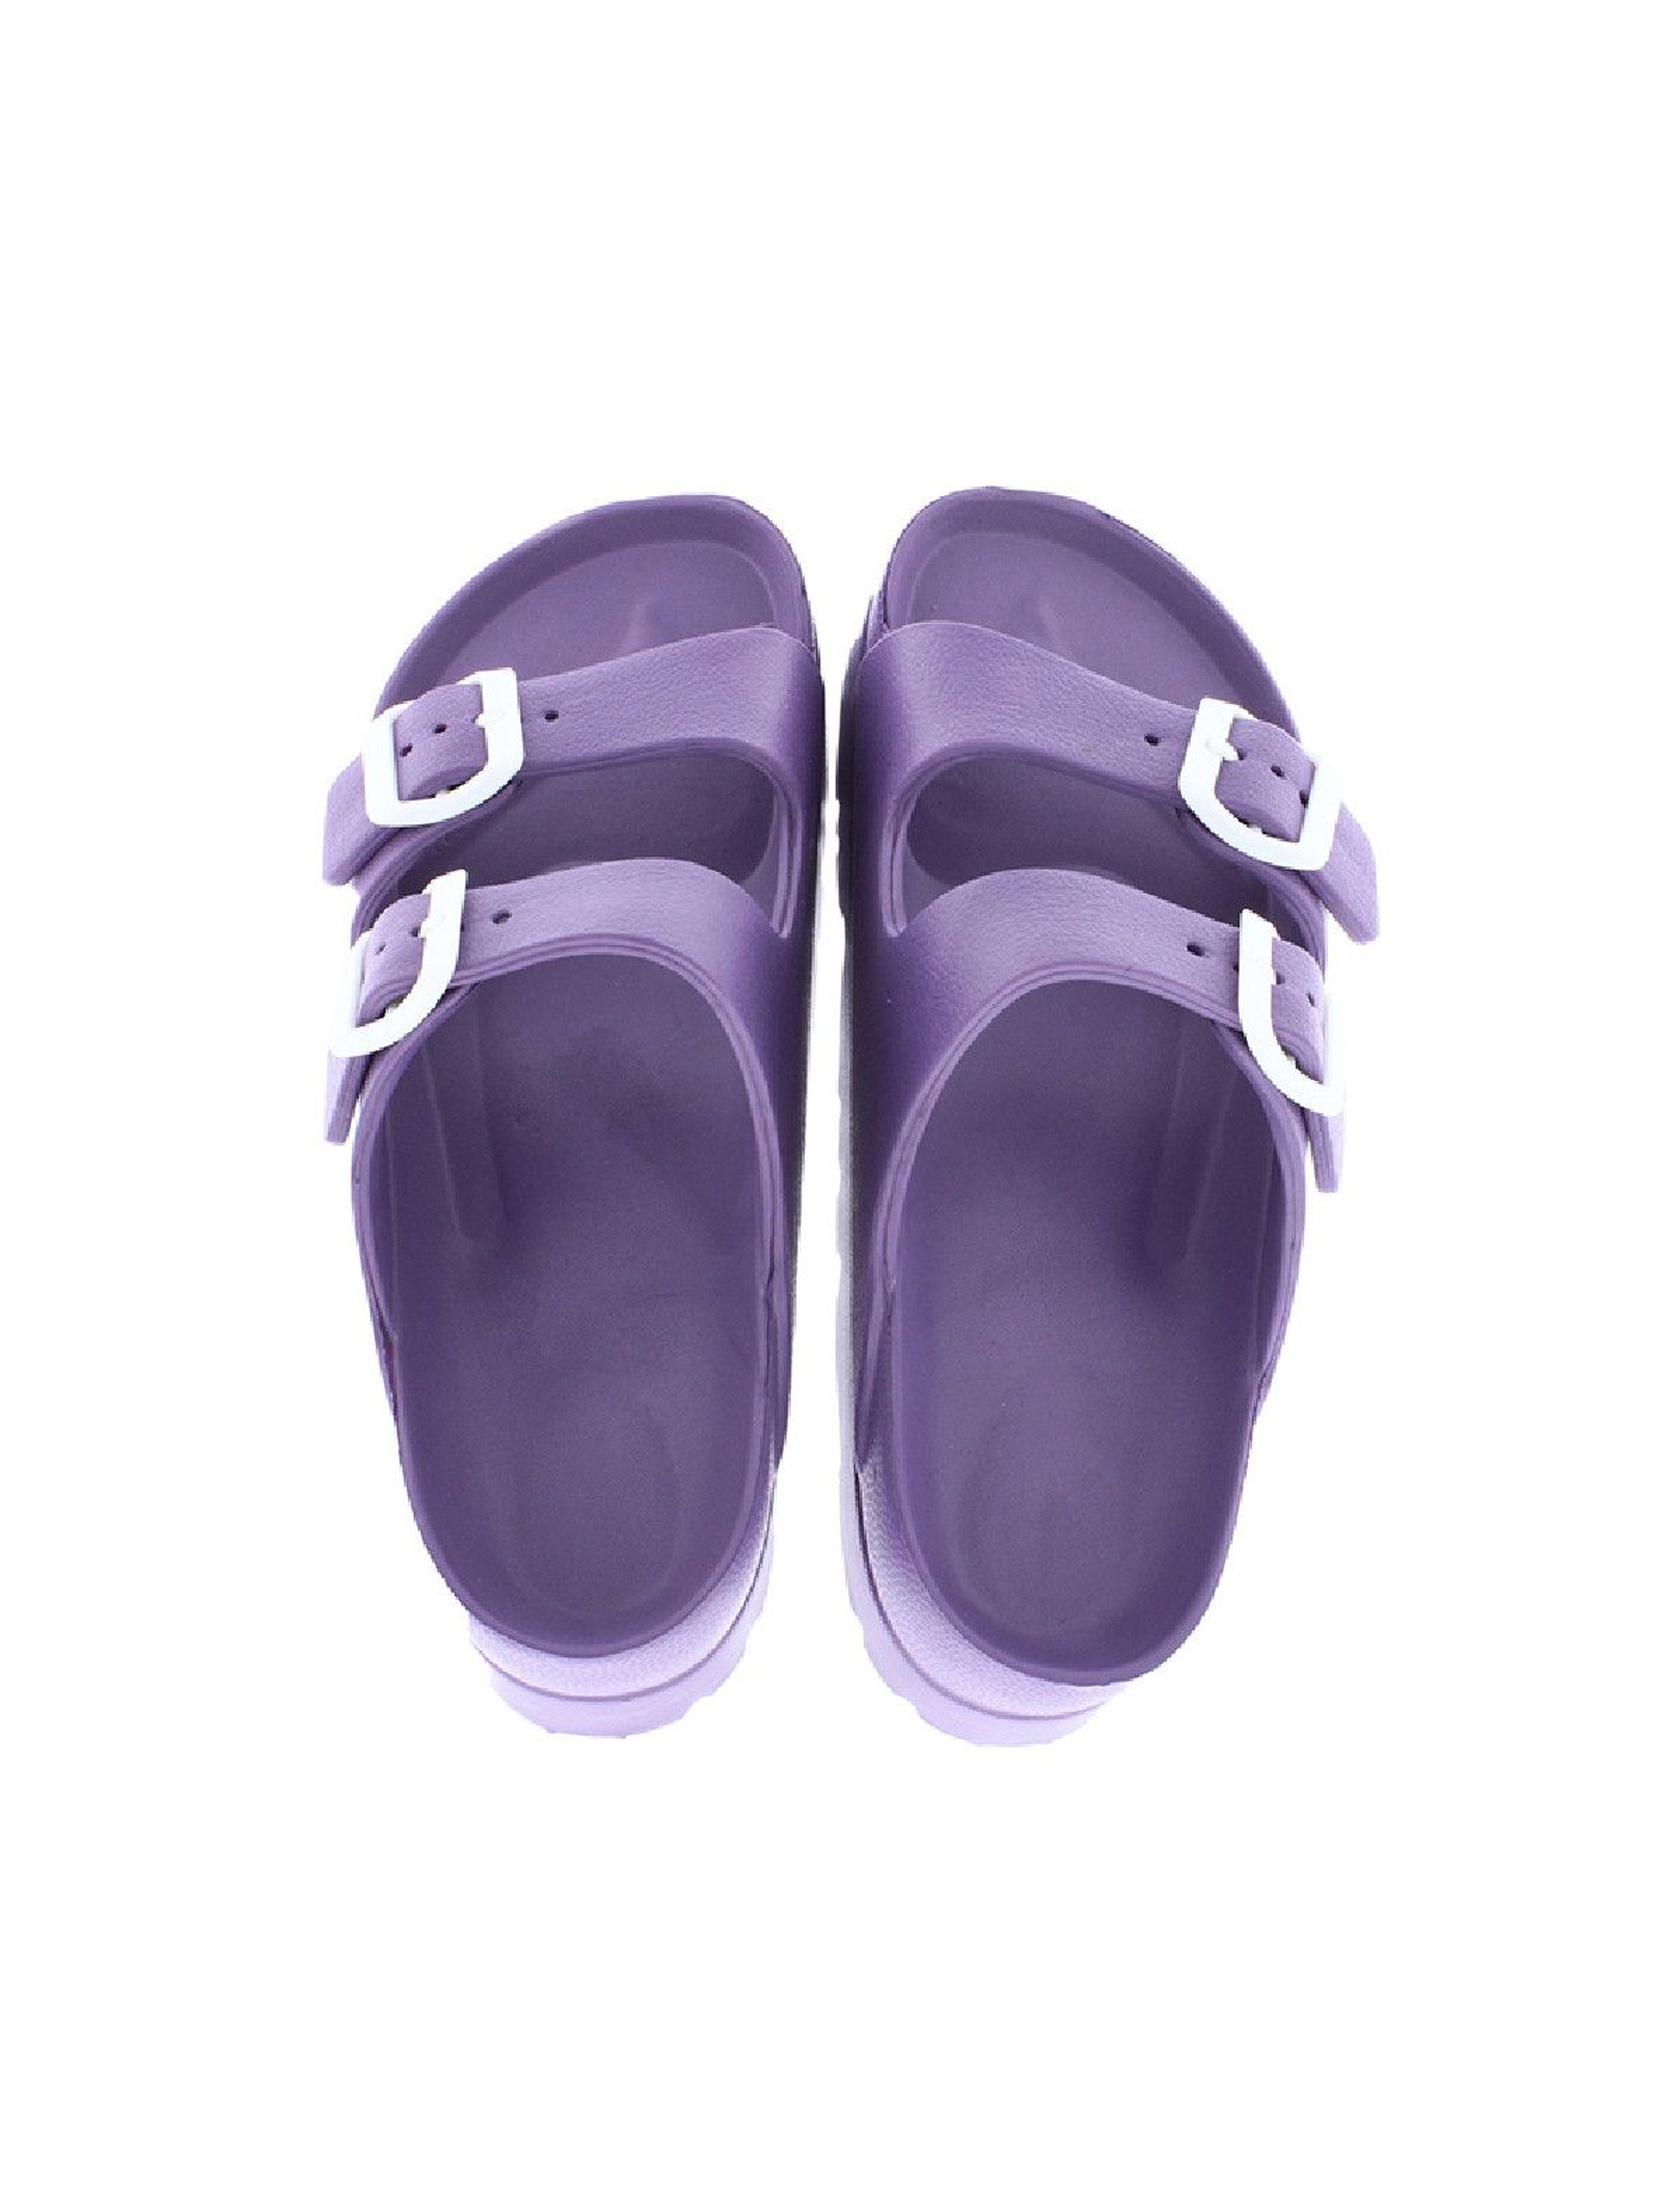 Damskie klapki- sandały fioletowe